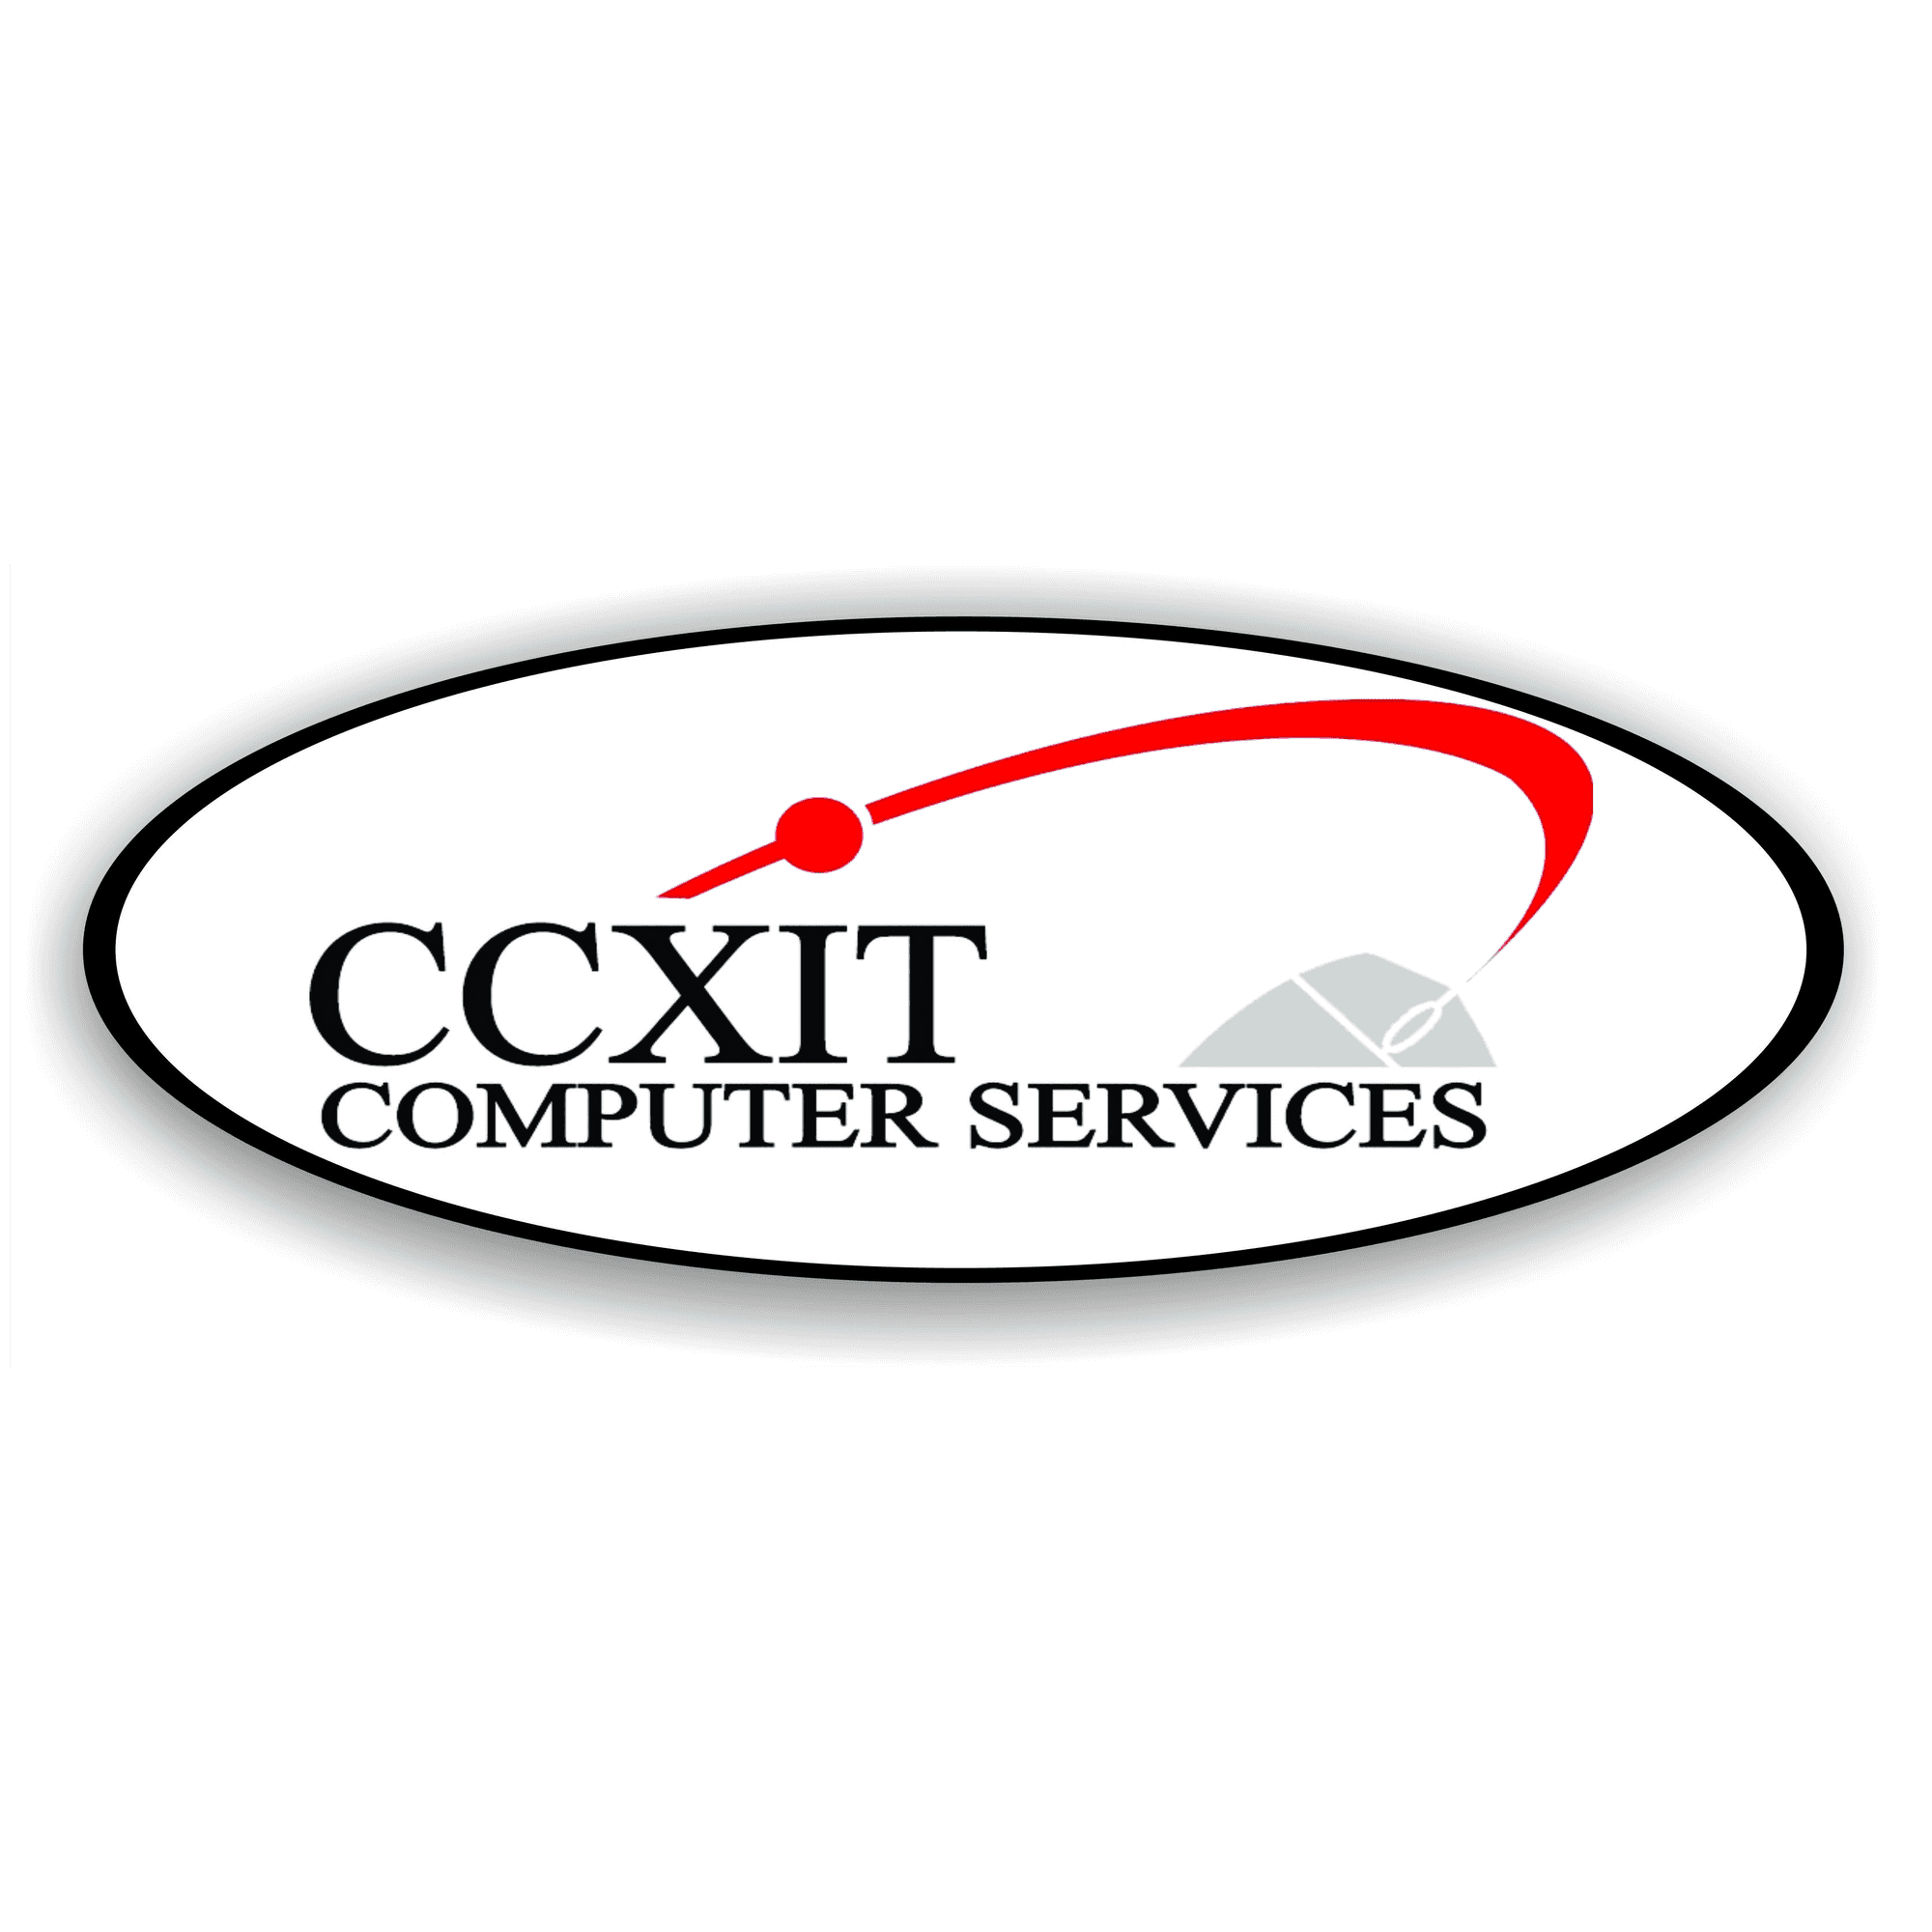 CCXIT Computer Services logo